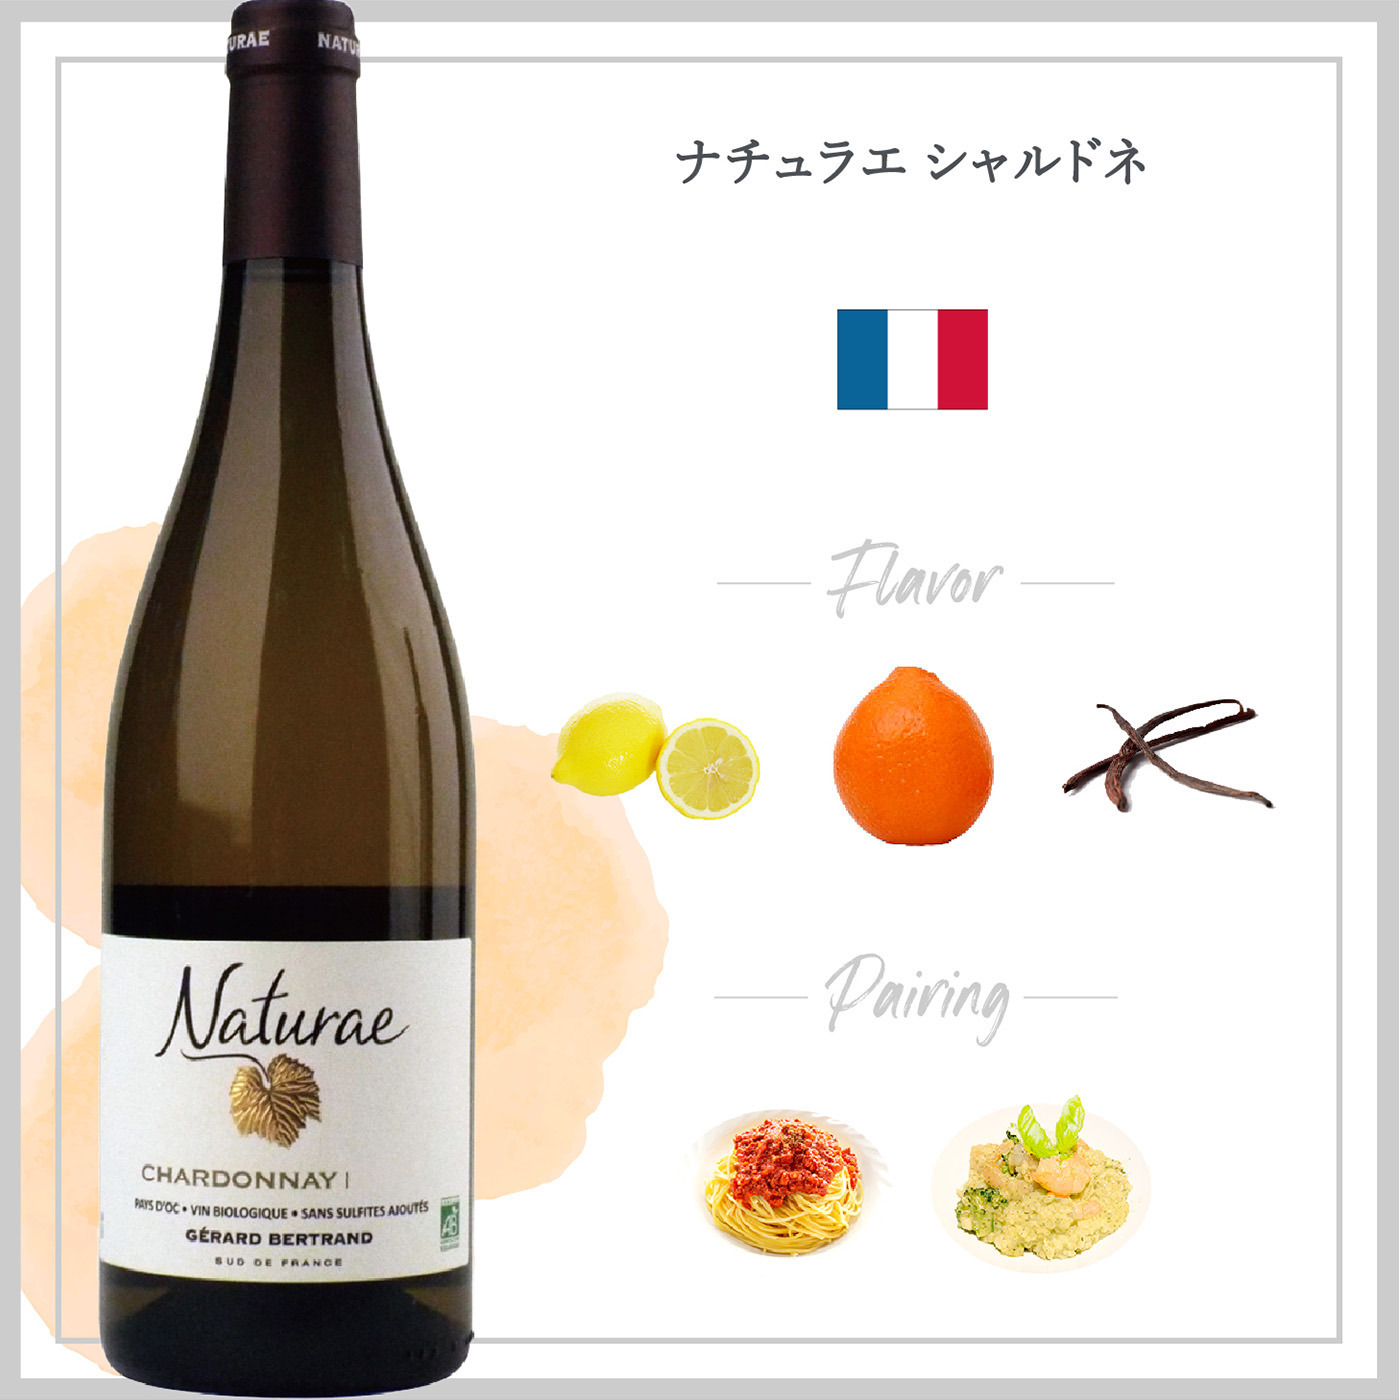 ナチュラエ シャルドネ (2022) | ピーロート・ジャパン ハイエンド・高級ワイン通販